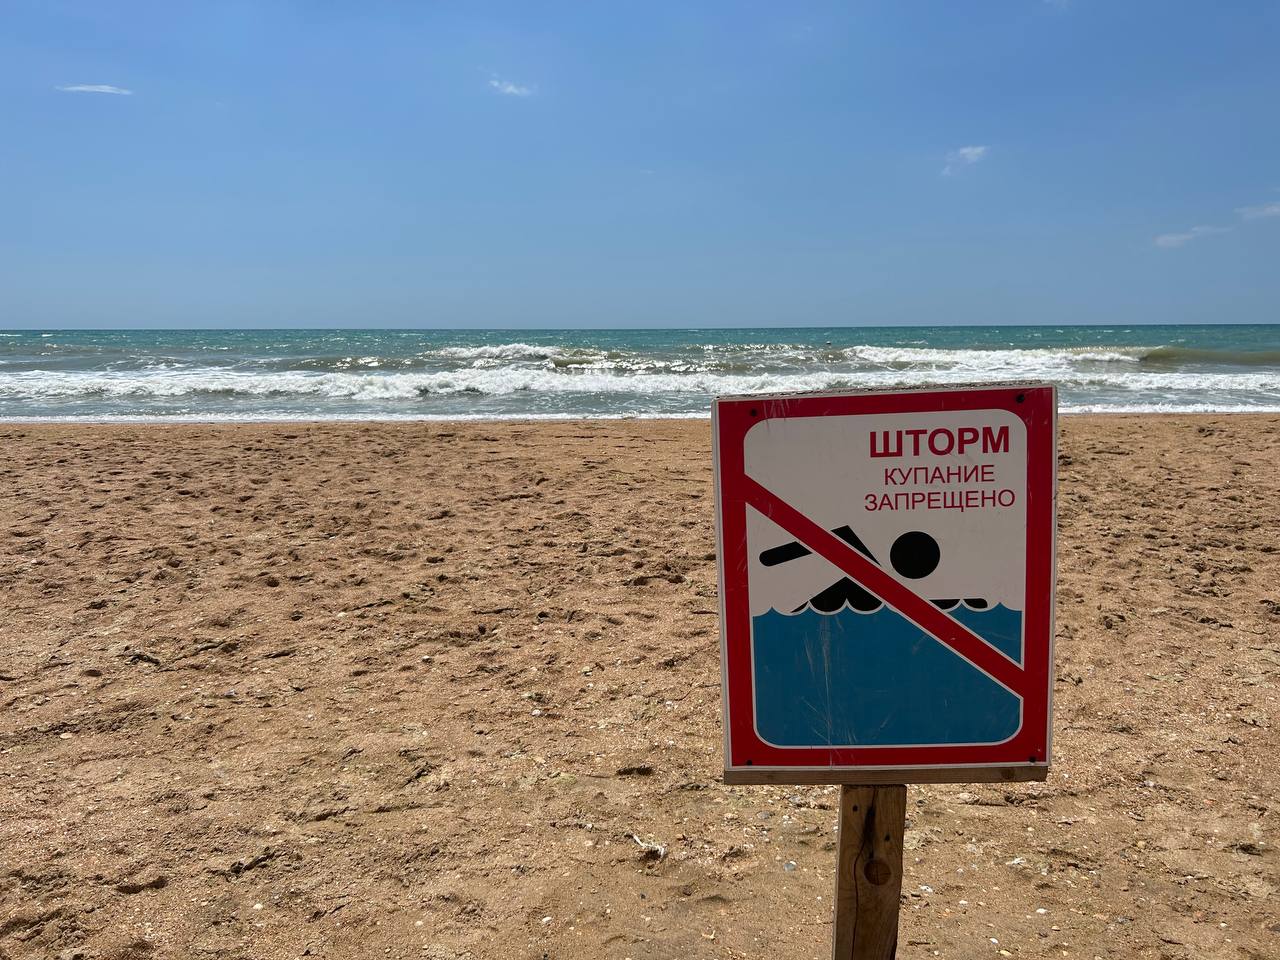 Шторм купание. Купаться запрещено. Пляжи закрыты. Купание запрещено море. Купаются в шторм.